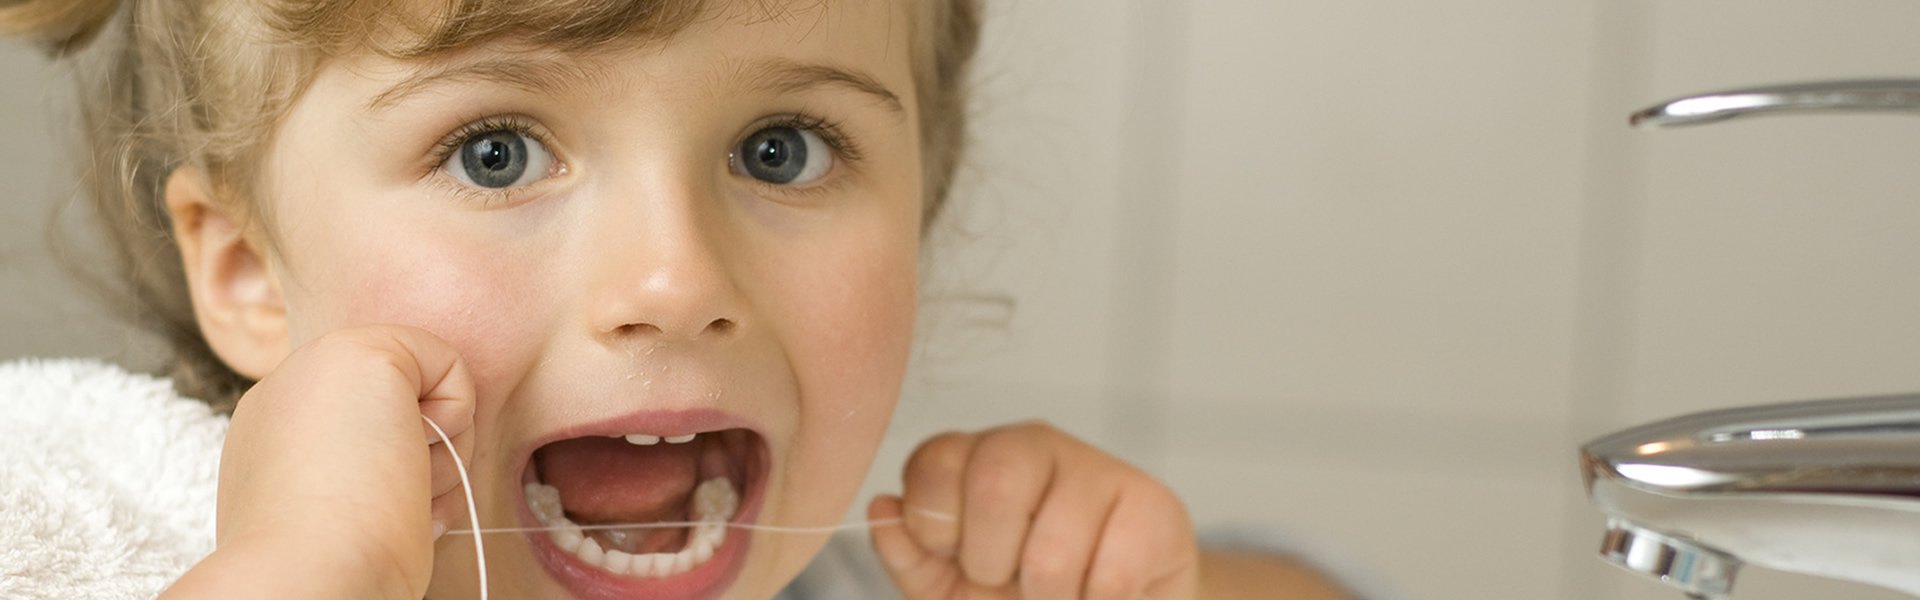 Çocuklarımızın Ağız ve Diş Sağlığı